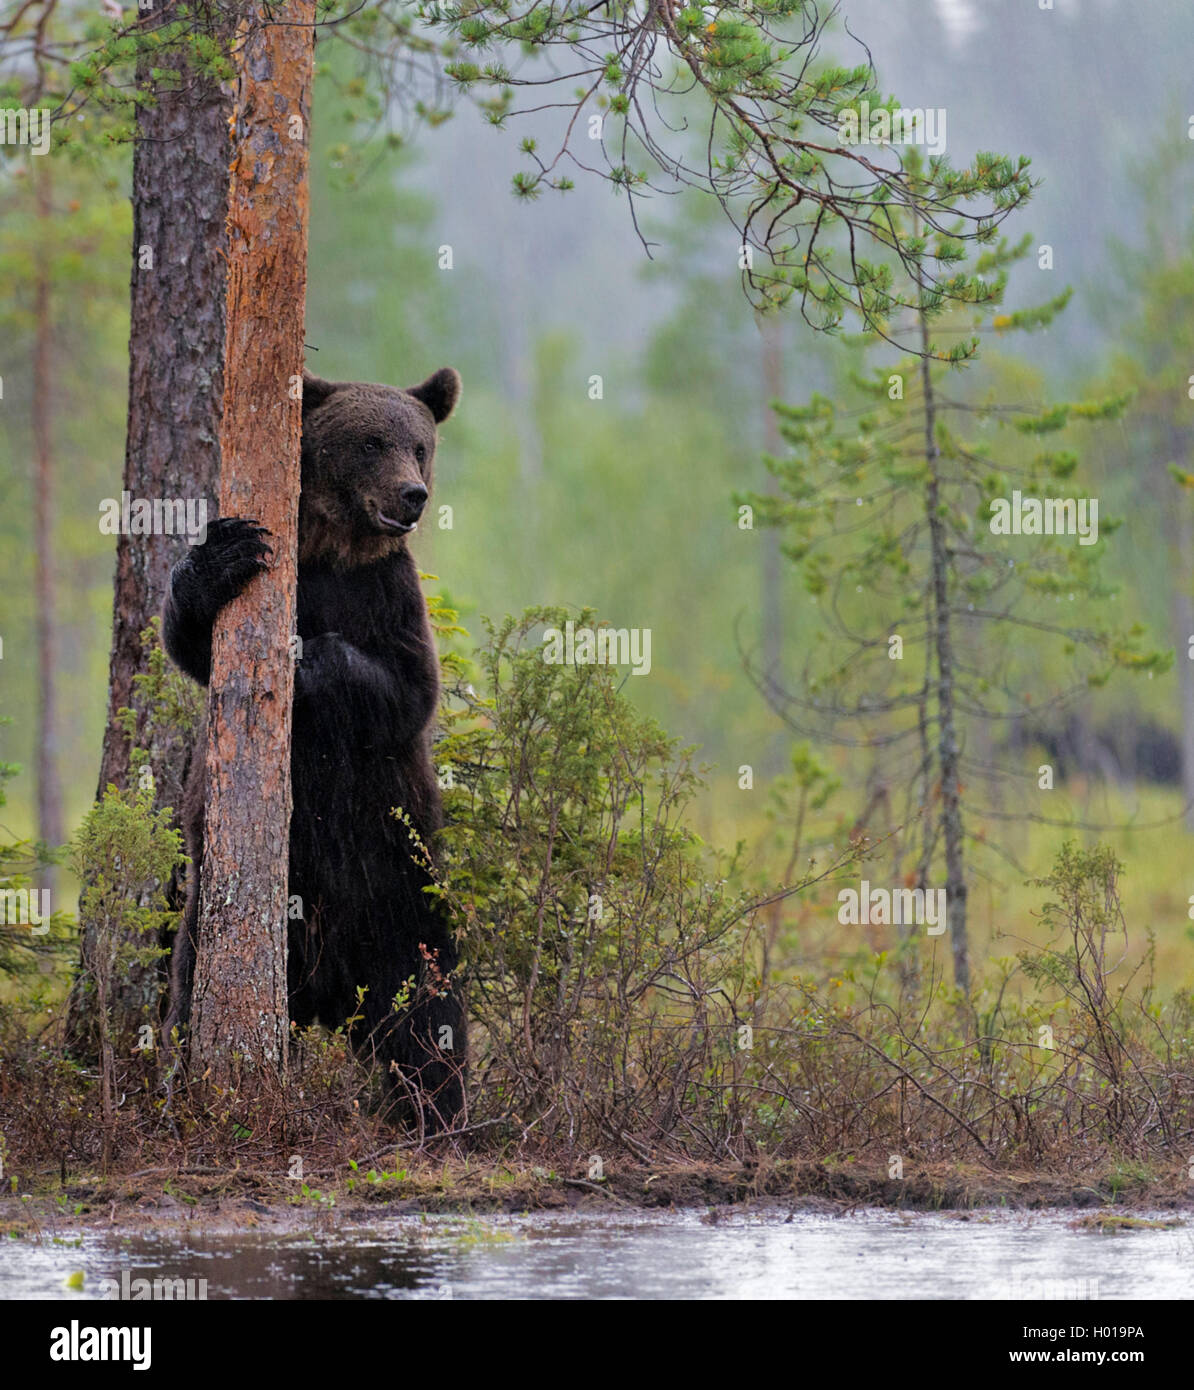 Europaeischer Braunbaer, Braunbaer, Braun-Baer (Ursus arctos arctos), steht aufrecht an einem Baumstamm, Norwegen | European bro Stock Photo